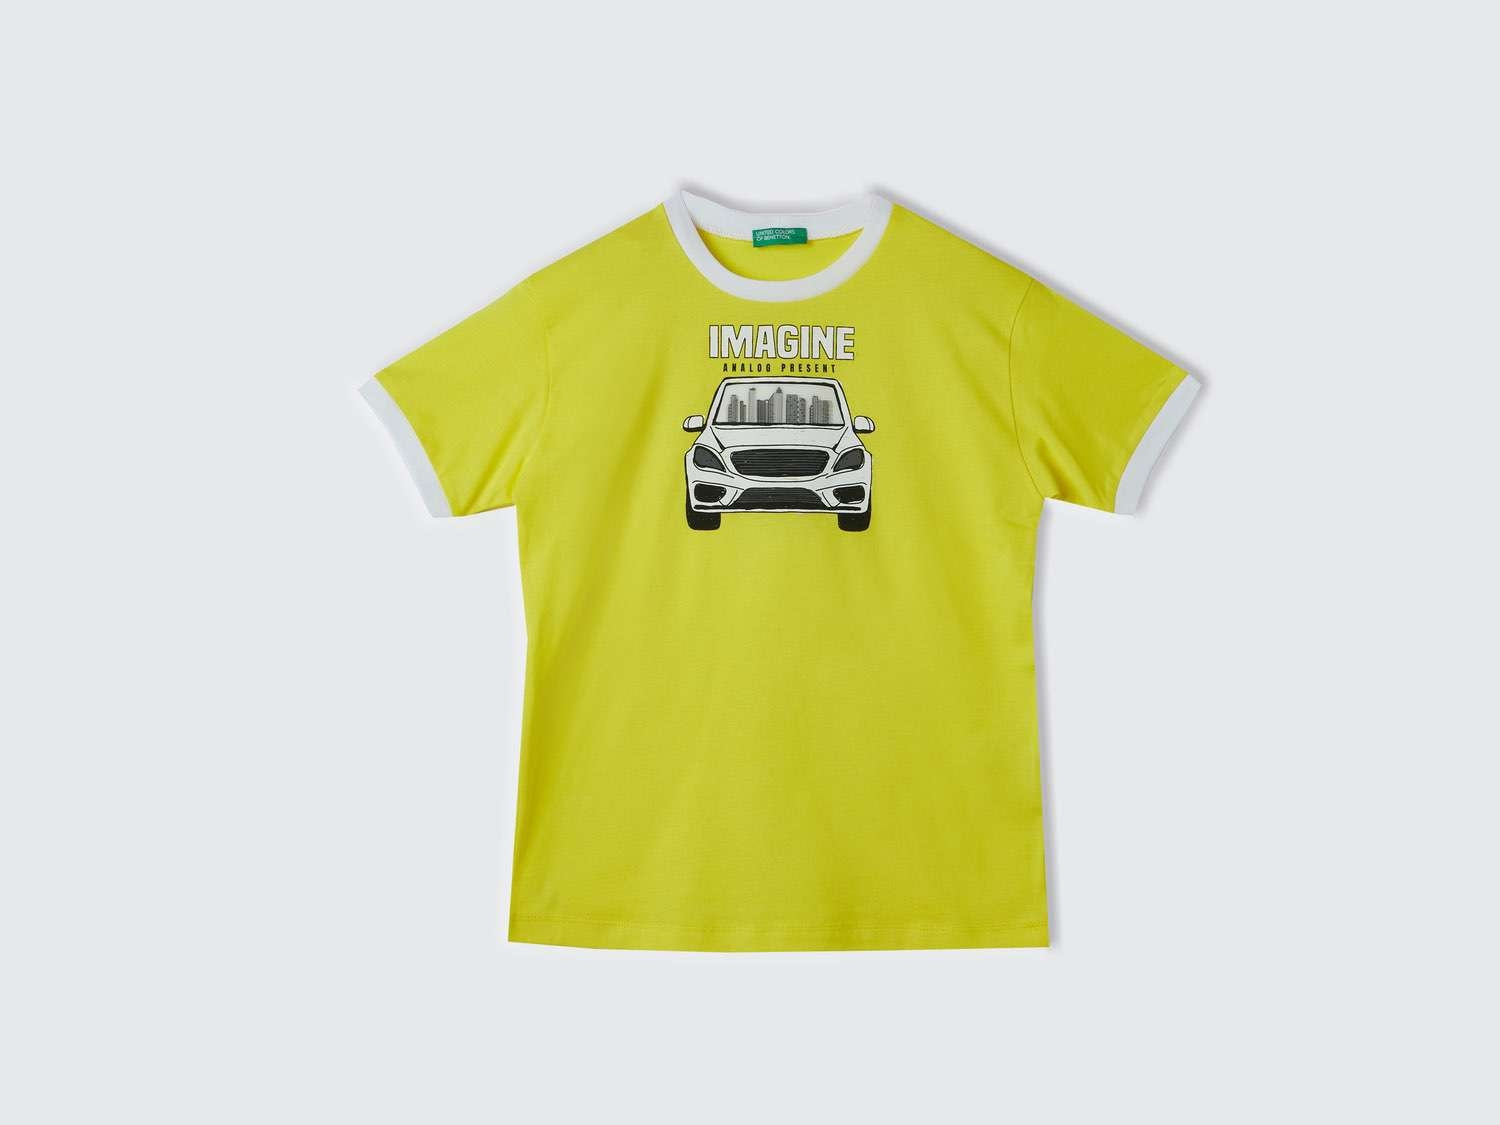 Benetton Erkek Çocuk Neon Sarı Merceksi Patch İşlemeli T-Shirt